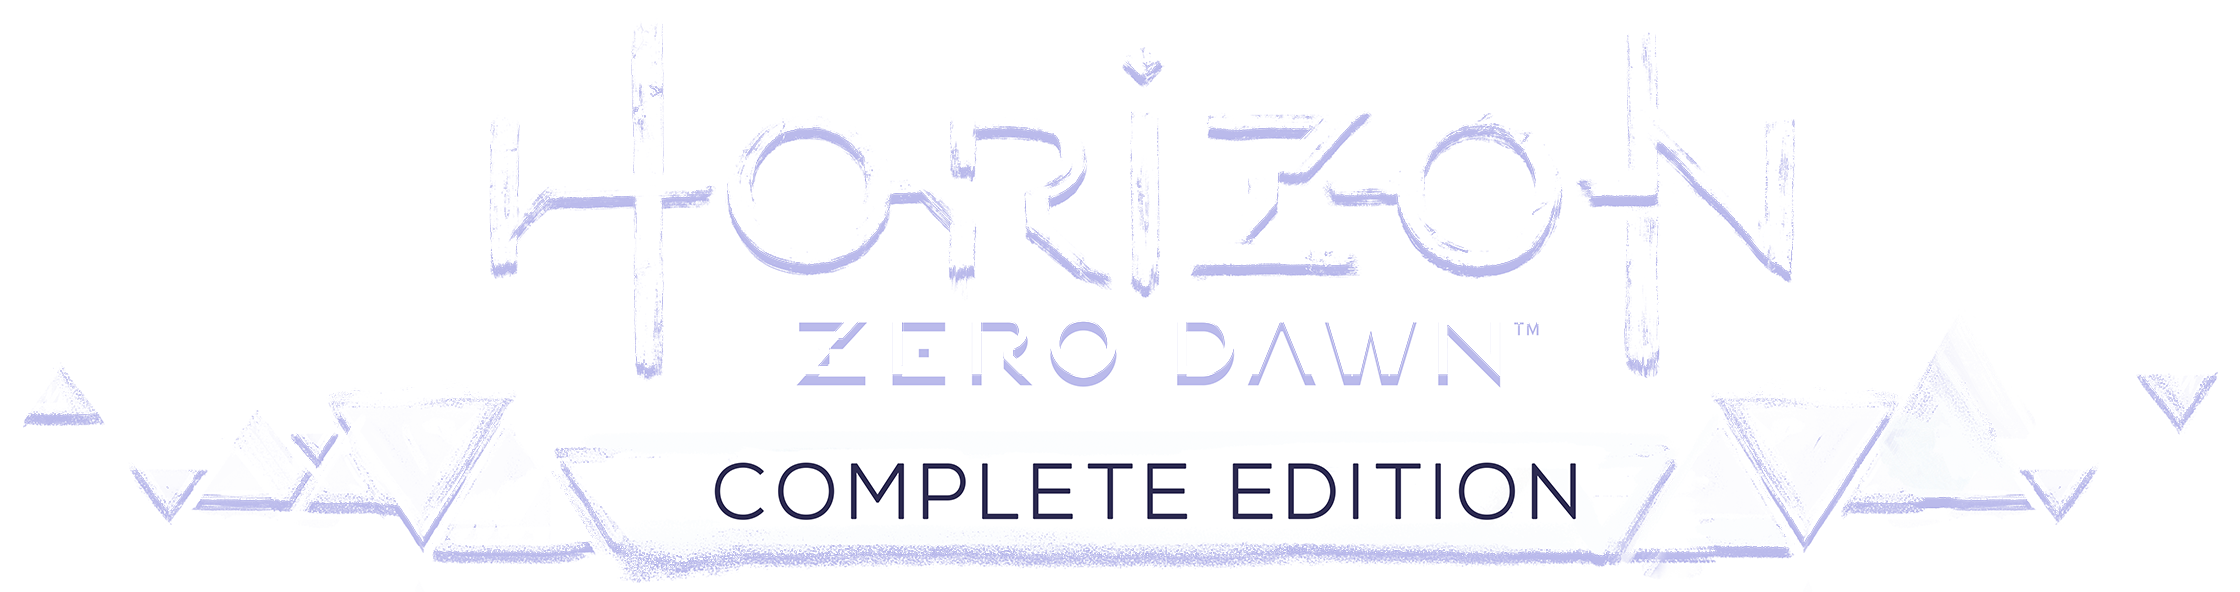 Horizon Zero Dawn Complete Edition - PS4 - ZEUS GAMES - A única